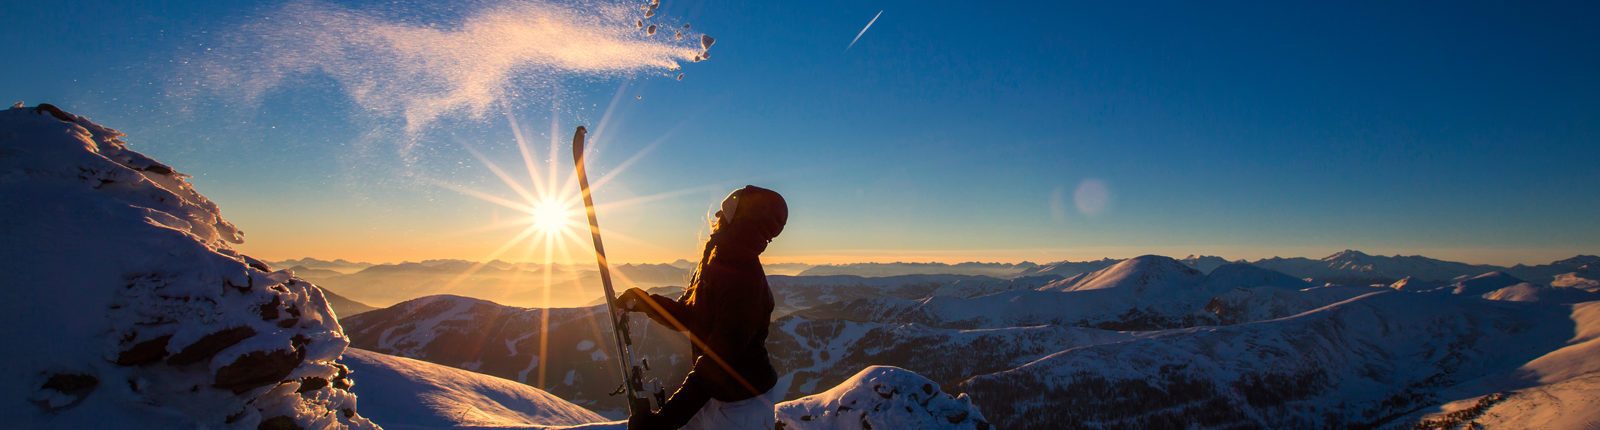 Skitourengeherin in der Abendsonne am Falkertspitz